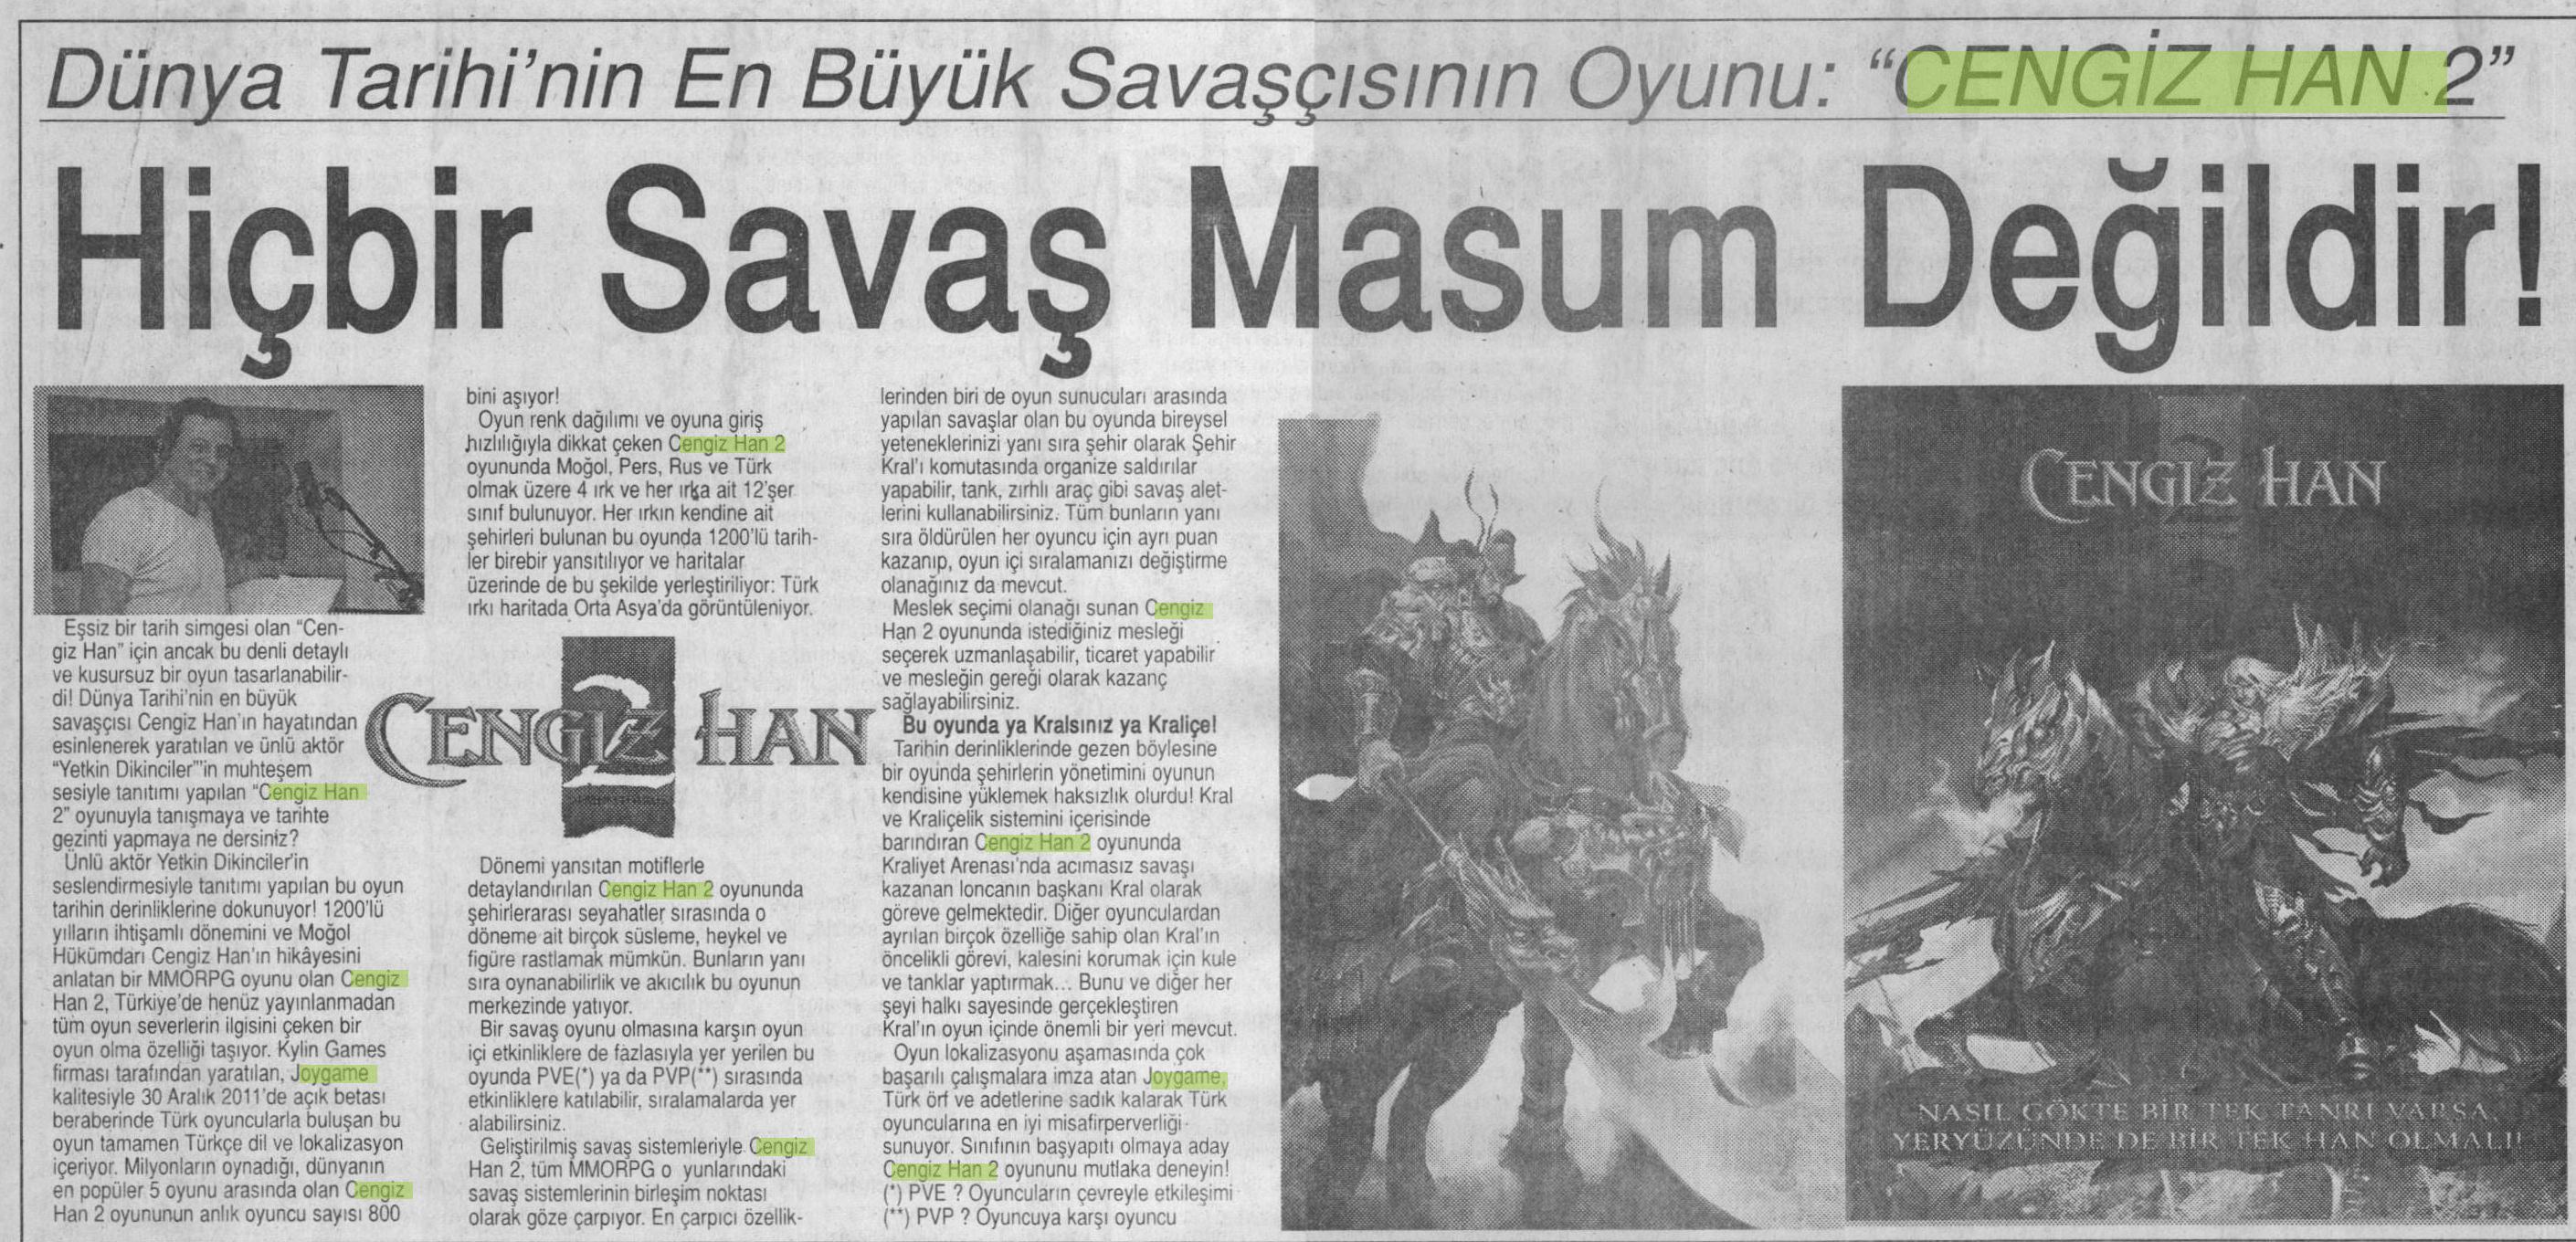 Netmarble-Turkey-Basin-Yansimasi-Son-Saat-Gazetesi-25-Aralik-2011-2